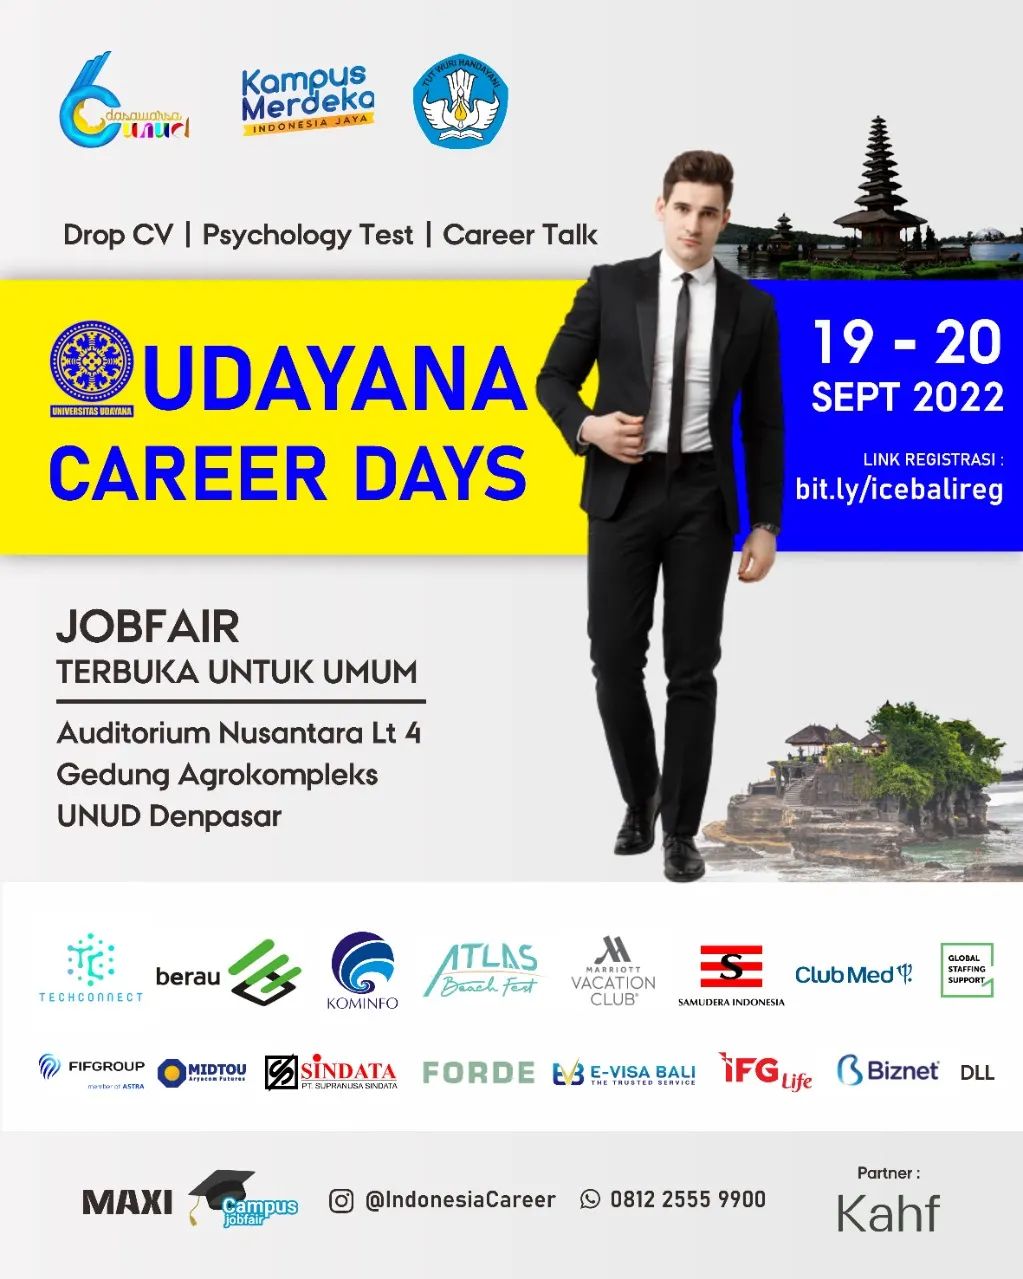 Udayana Career Days 2022